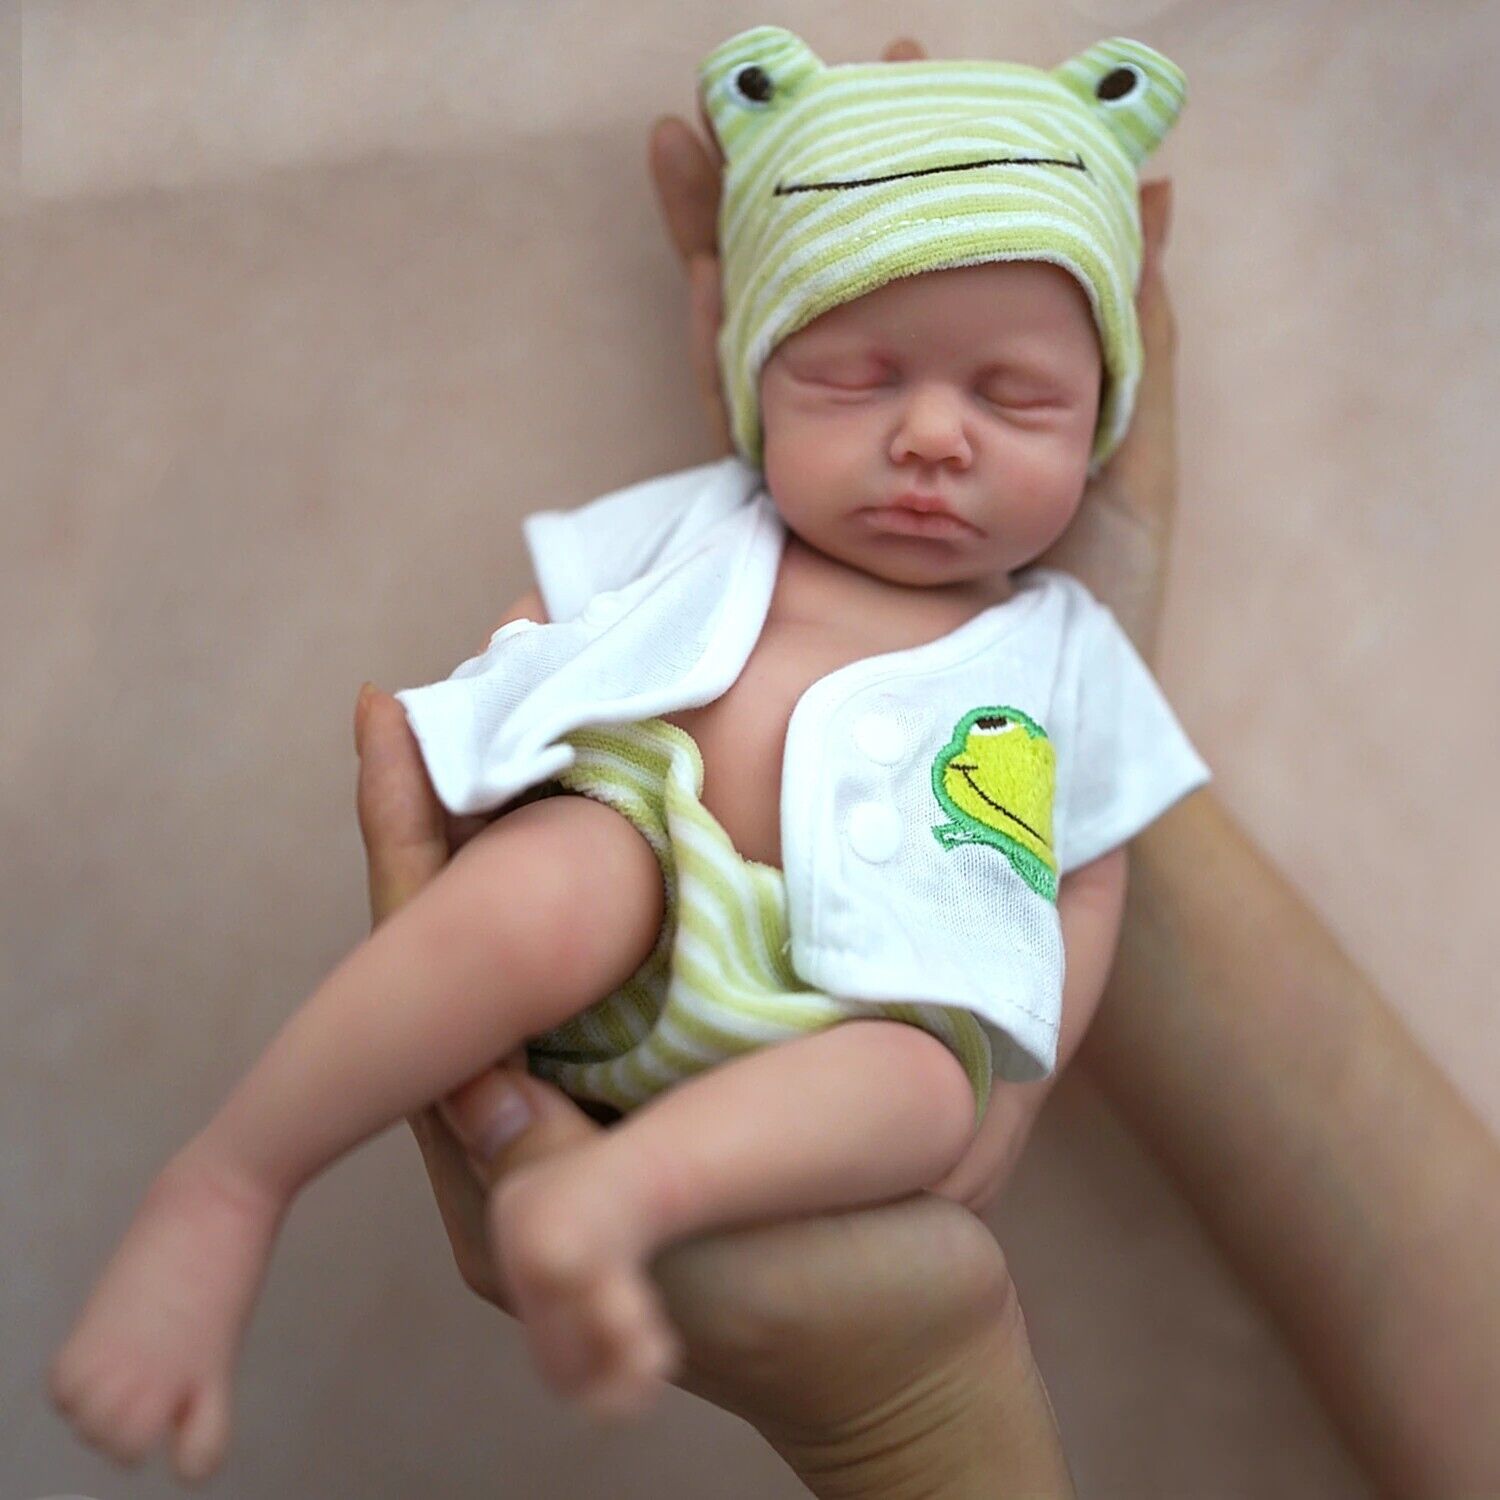 Baby Boy Doll Full Body Silicone Lifelike Reborn Newborn Doll Toy 12" Plus Gift Unbranded - фотография #2